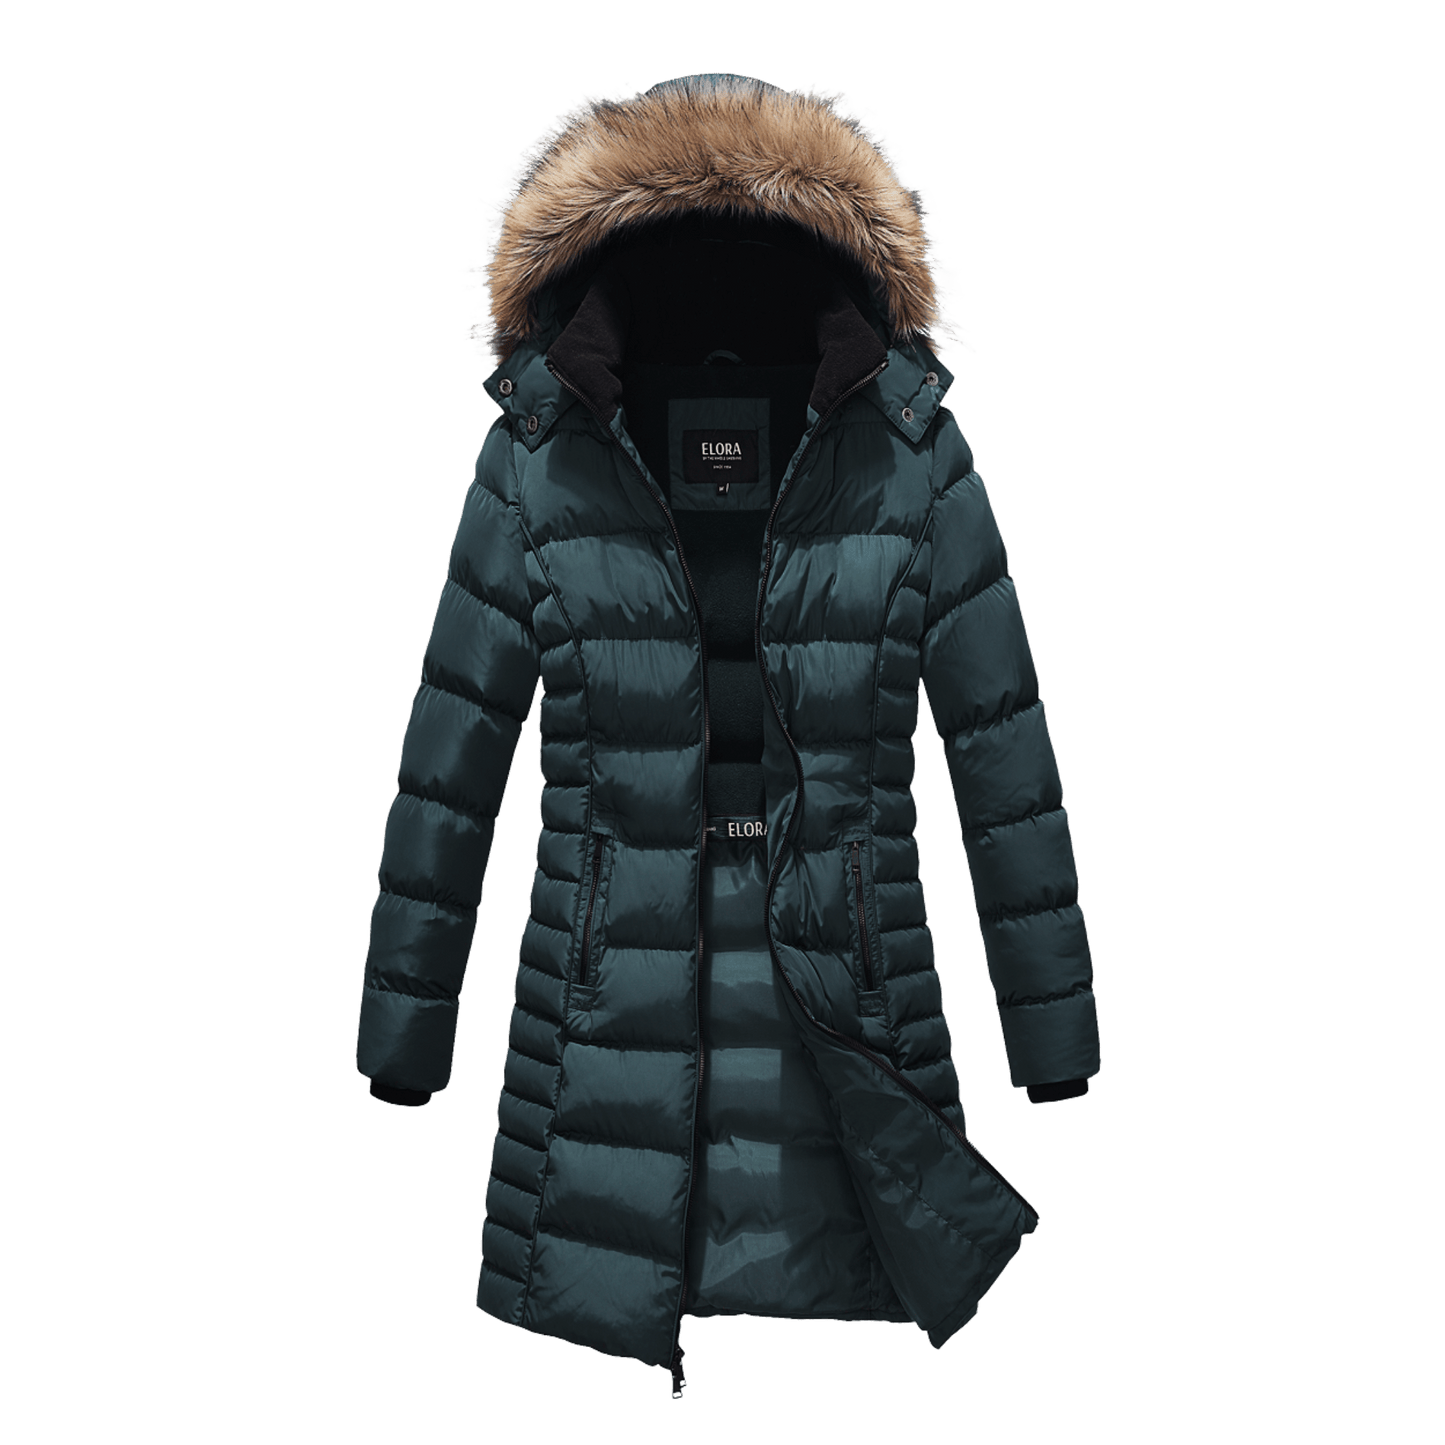 Mid Length Women's Winter Coat with Fleece Lining